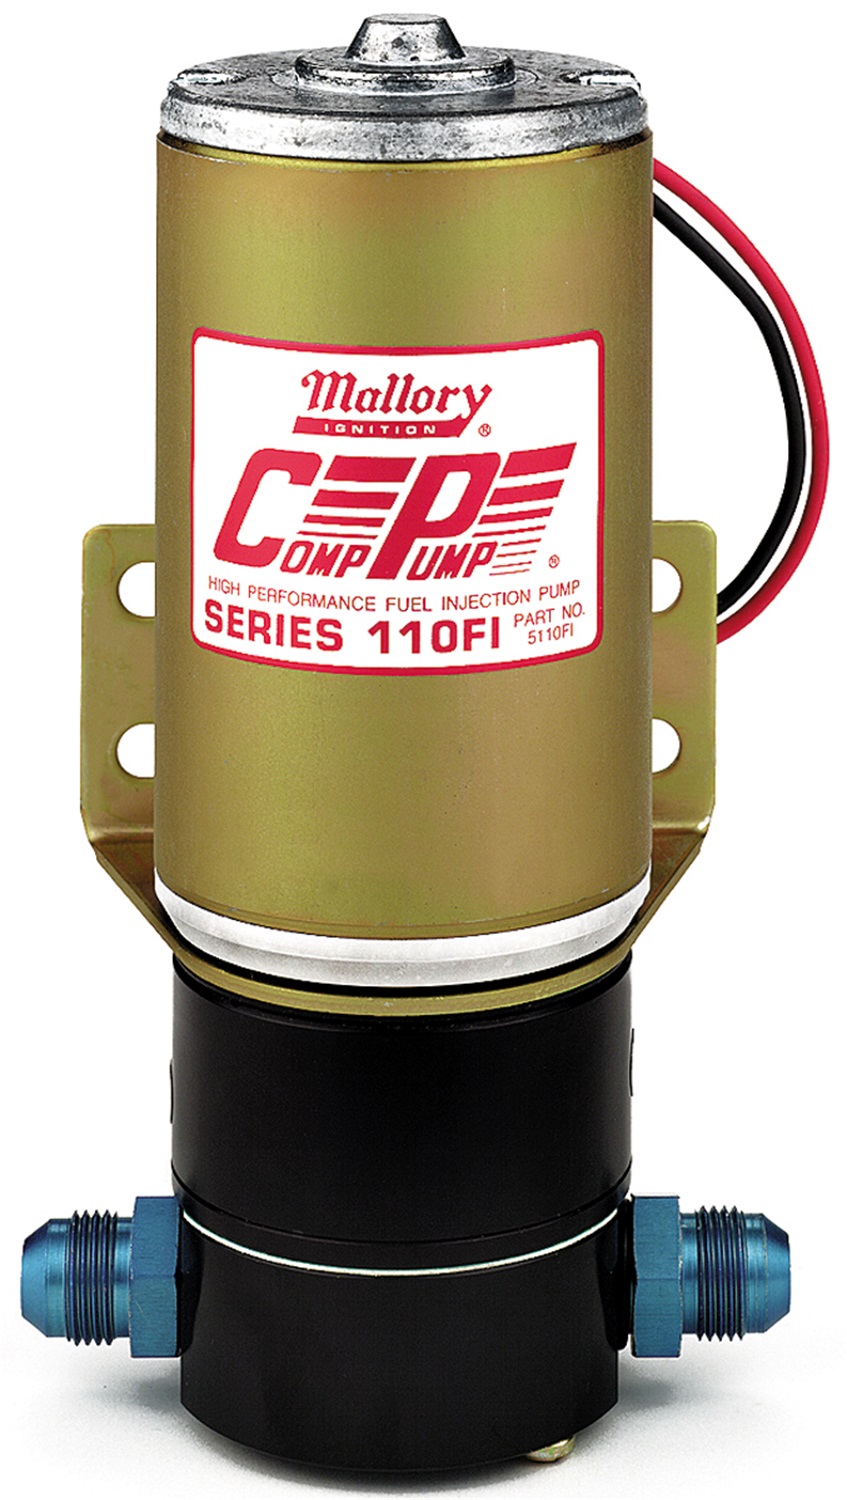 Mallory Mallory 5110FI Comp Pump Series 110FI